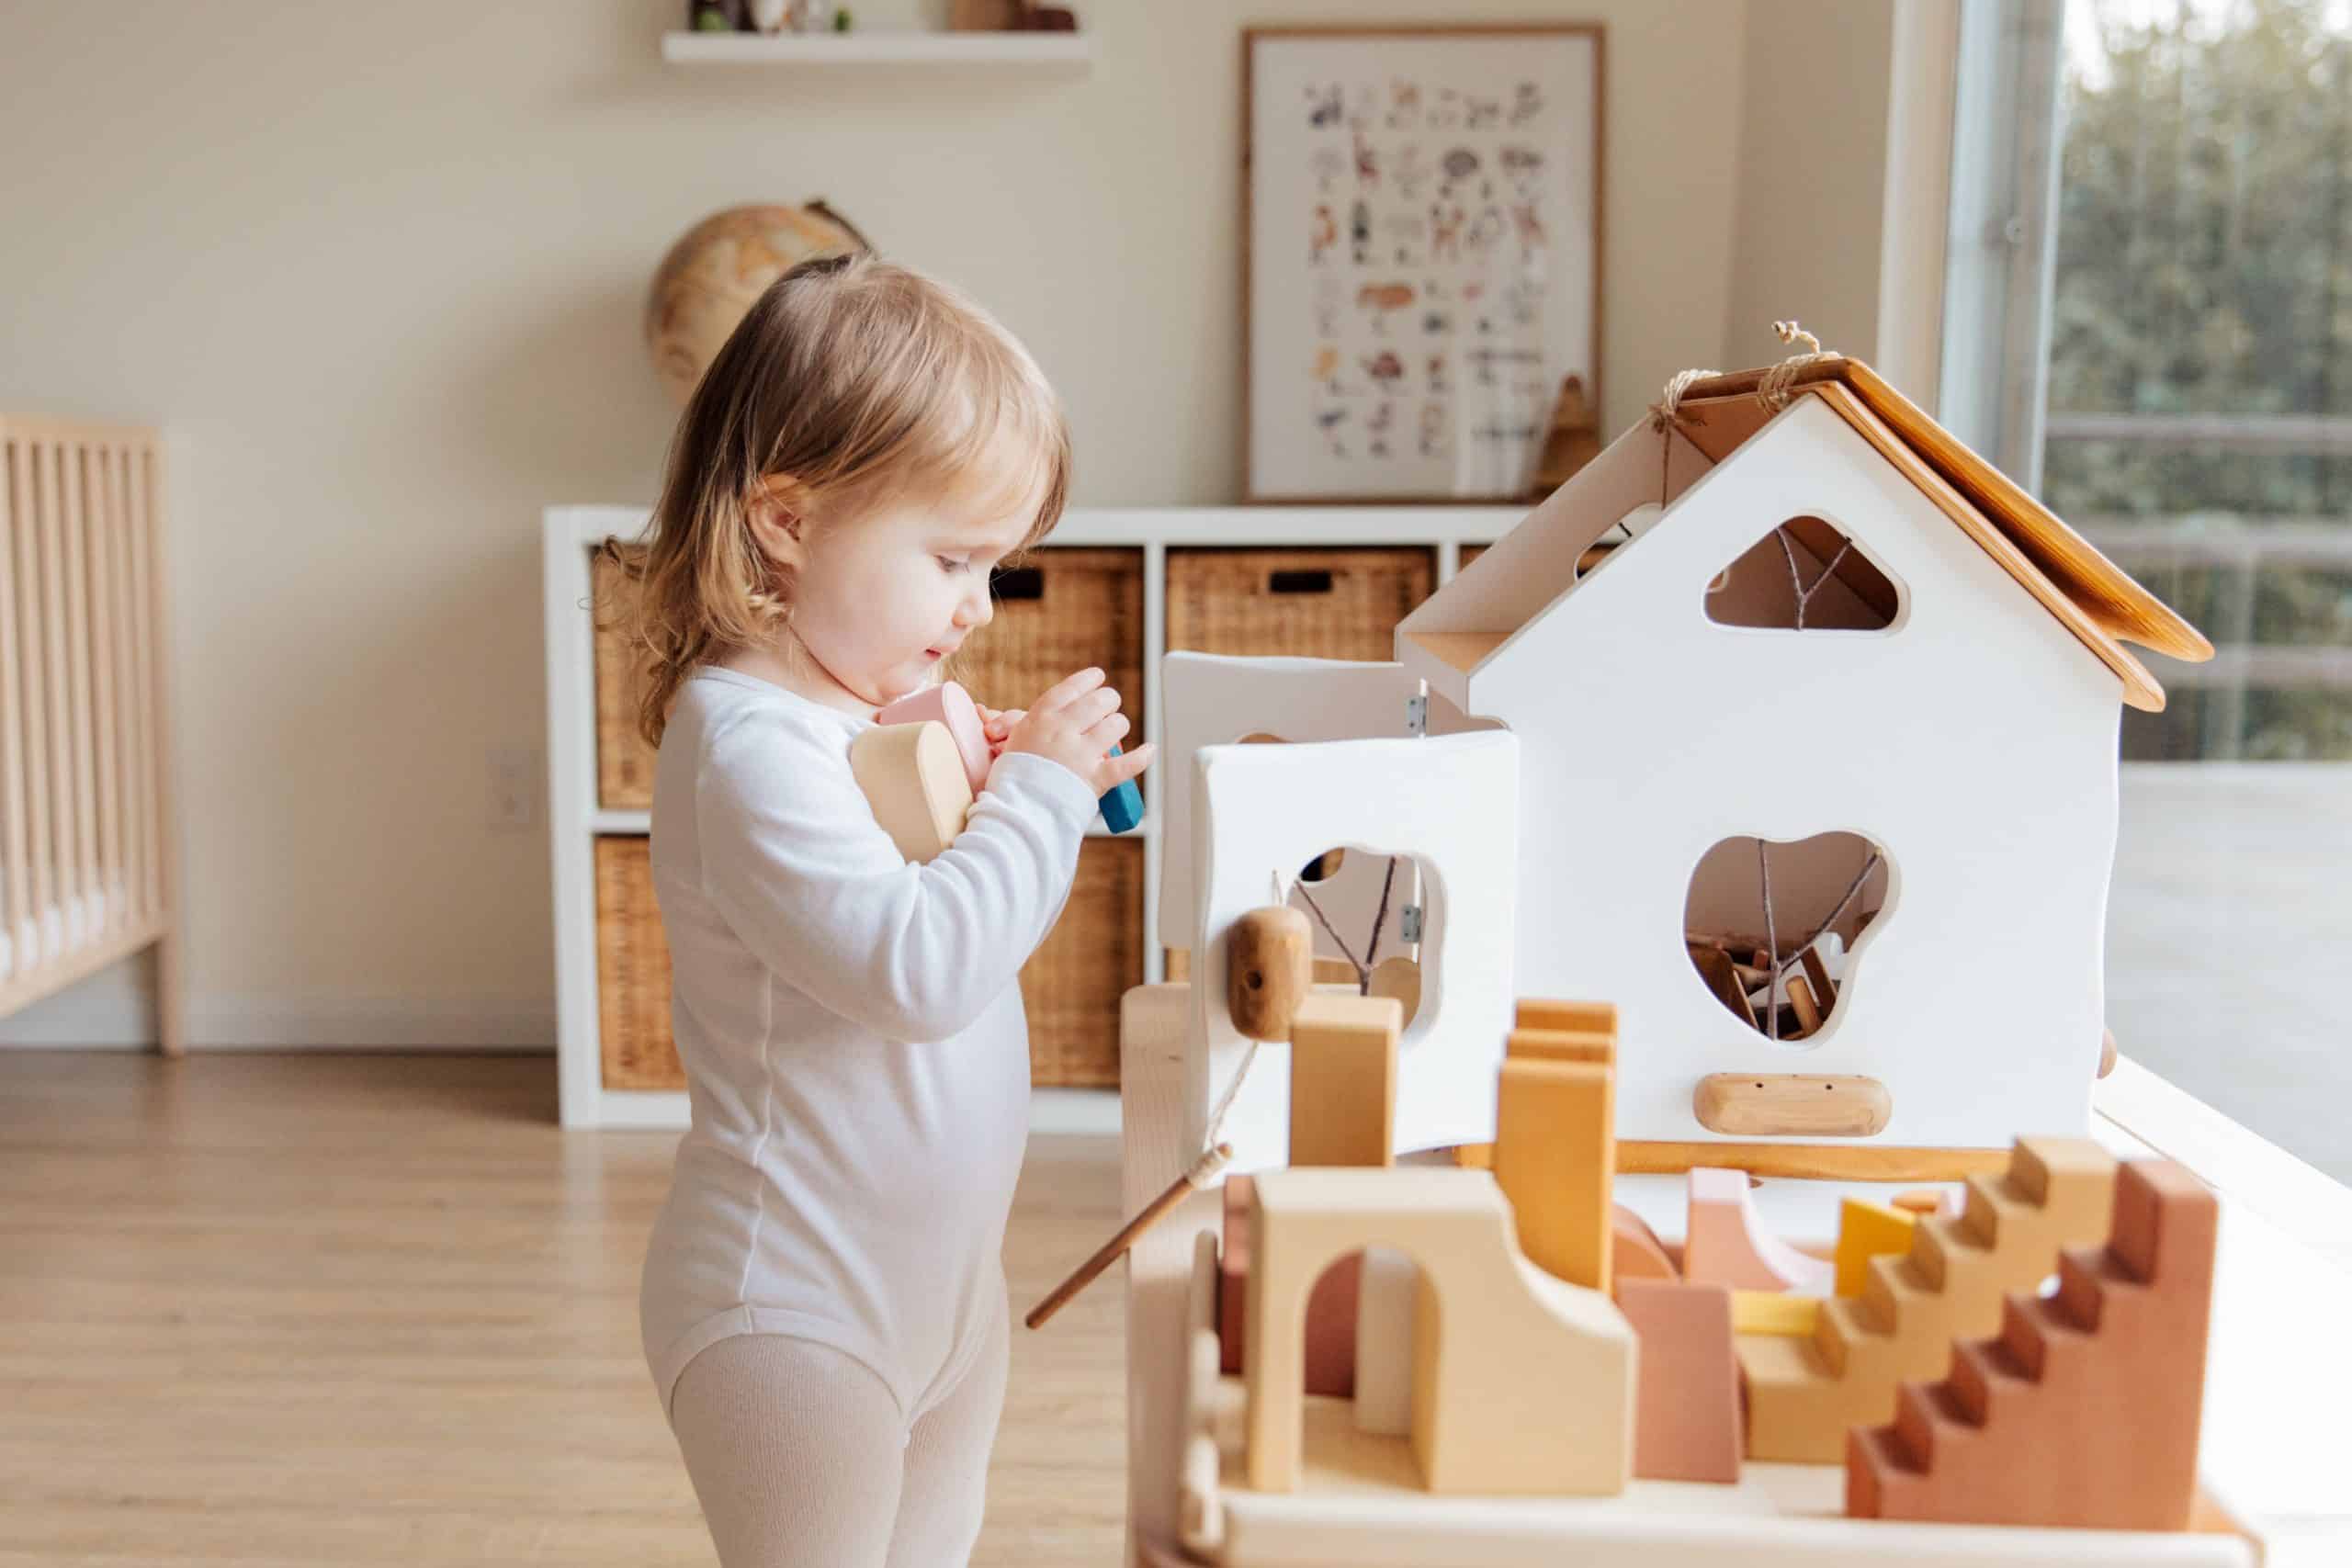 Zabawki rozwijające dziecko: Klucz do kreatywności, umiejętności i radości